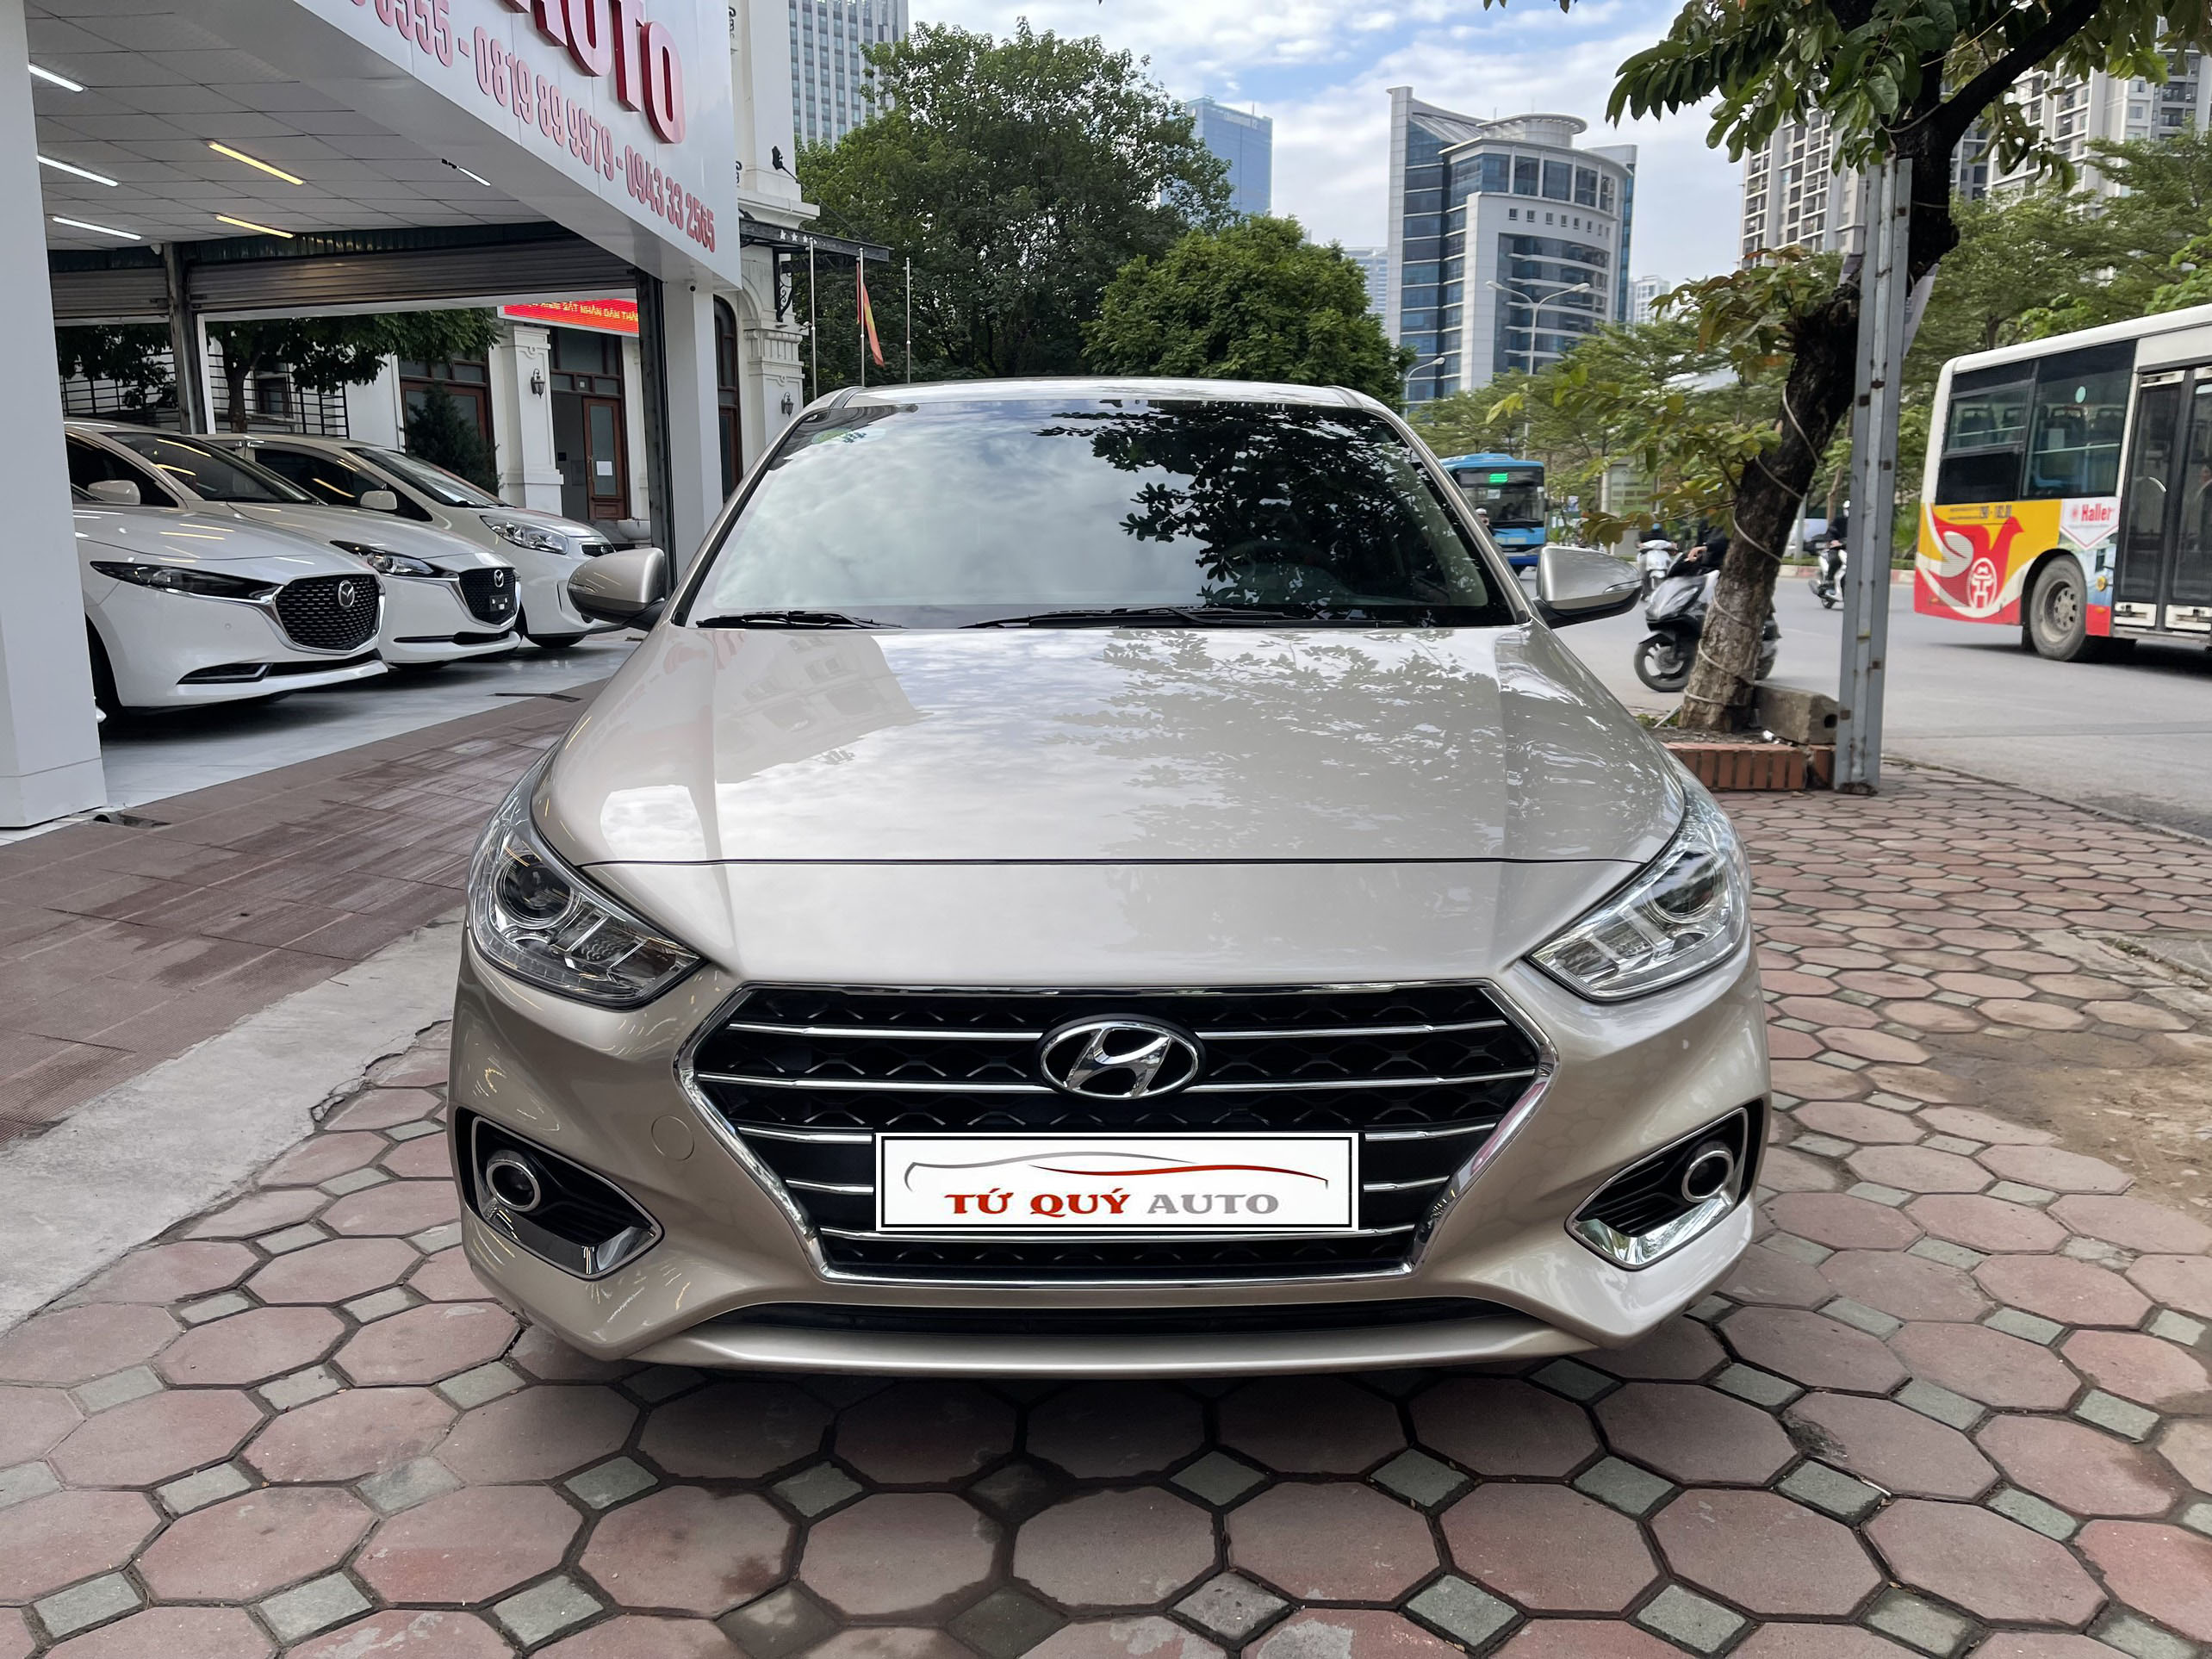 Hyundai Accent 2019 số sàn bản Full màu vàng cát  Đức Kí Gửi Mua Bán  Xe  MBN315752  0966182558